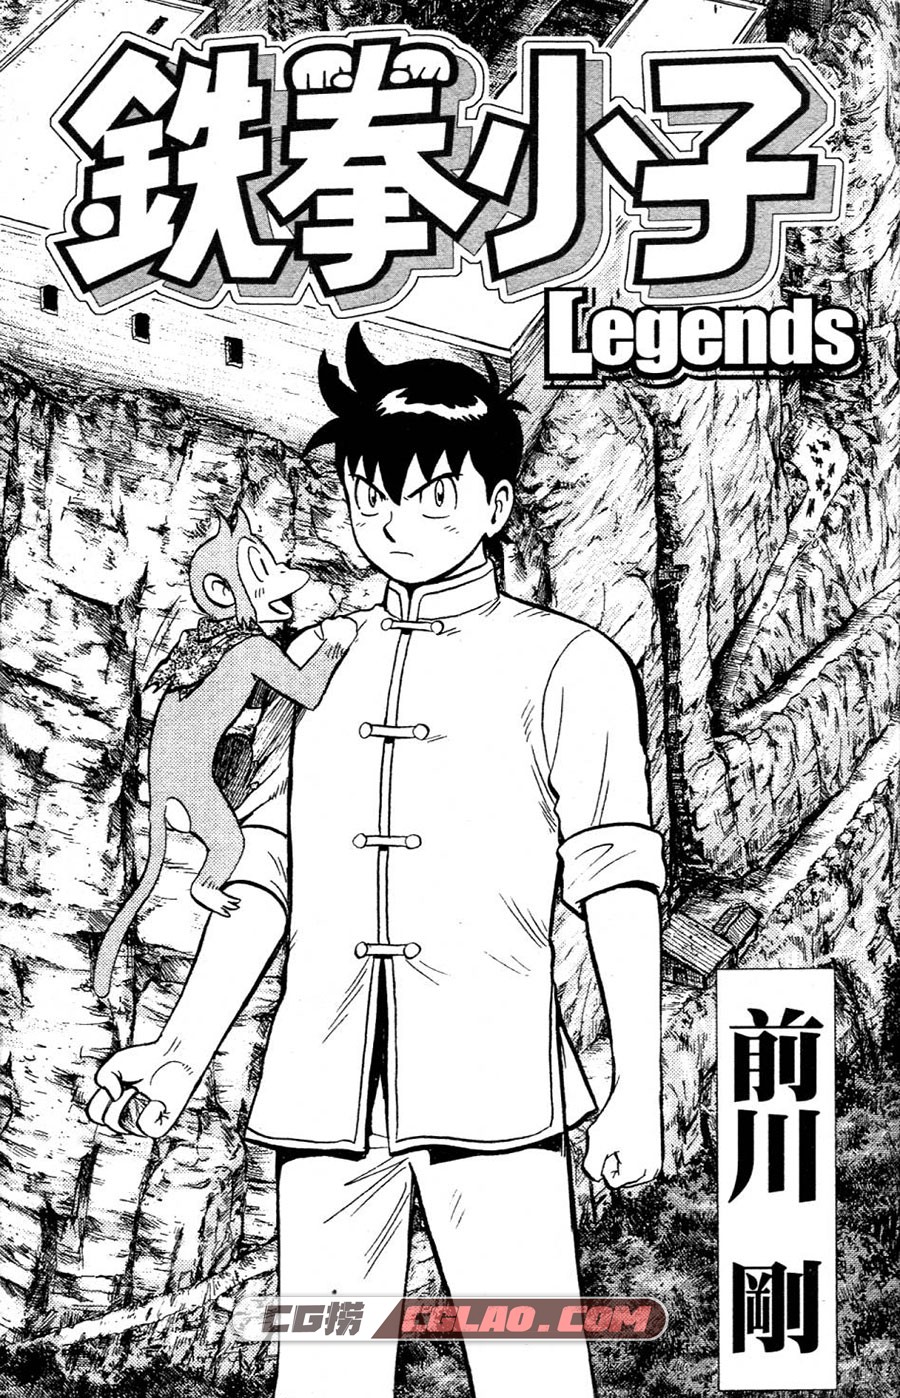 铁拳小子 漫画全套系列下载 铁拳小子Legends/新铁拳小子/外传,0002.jpg